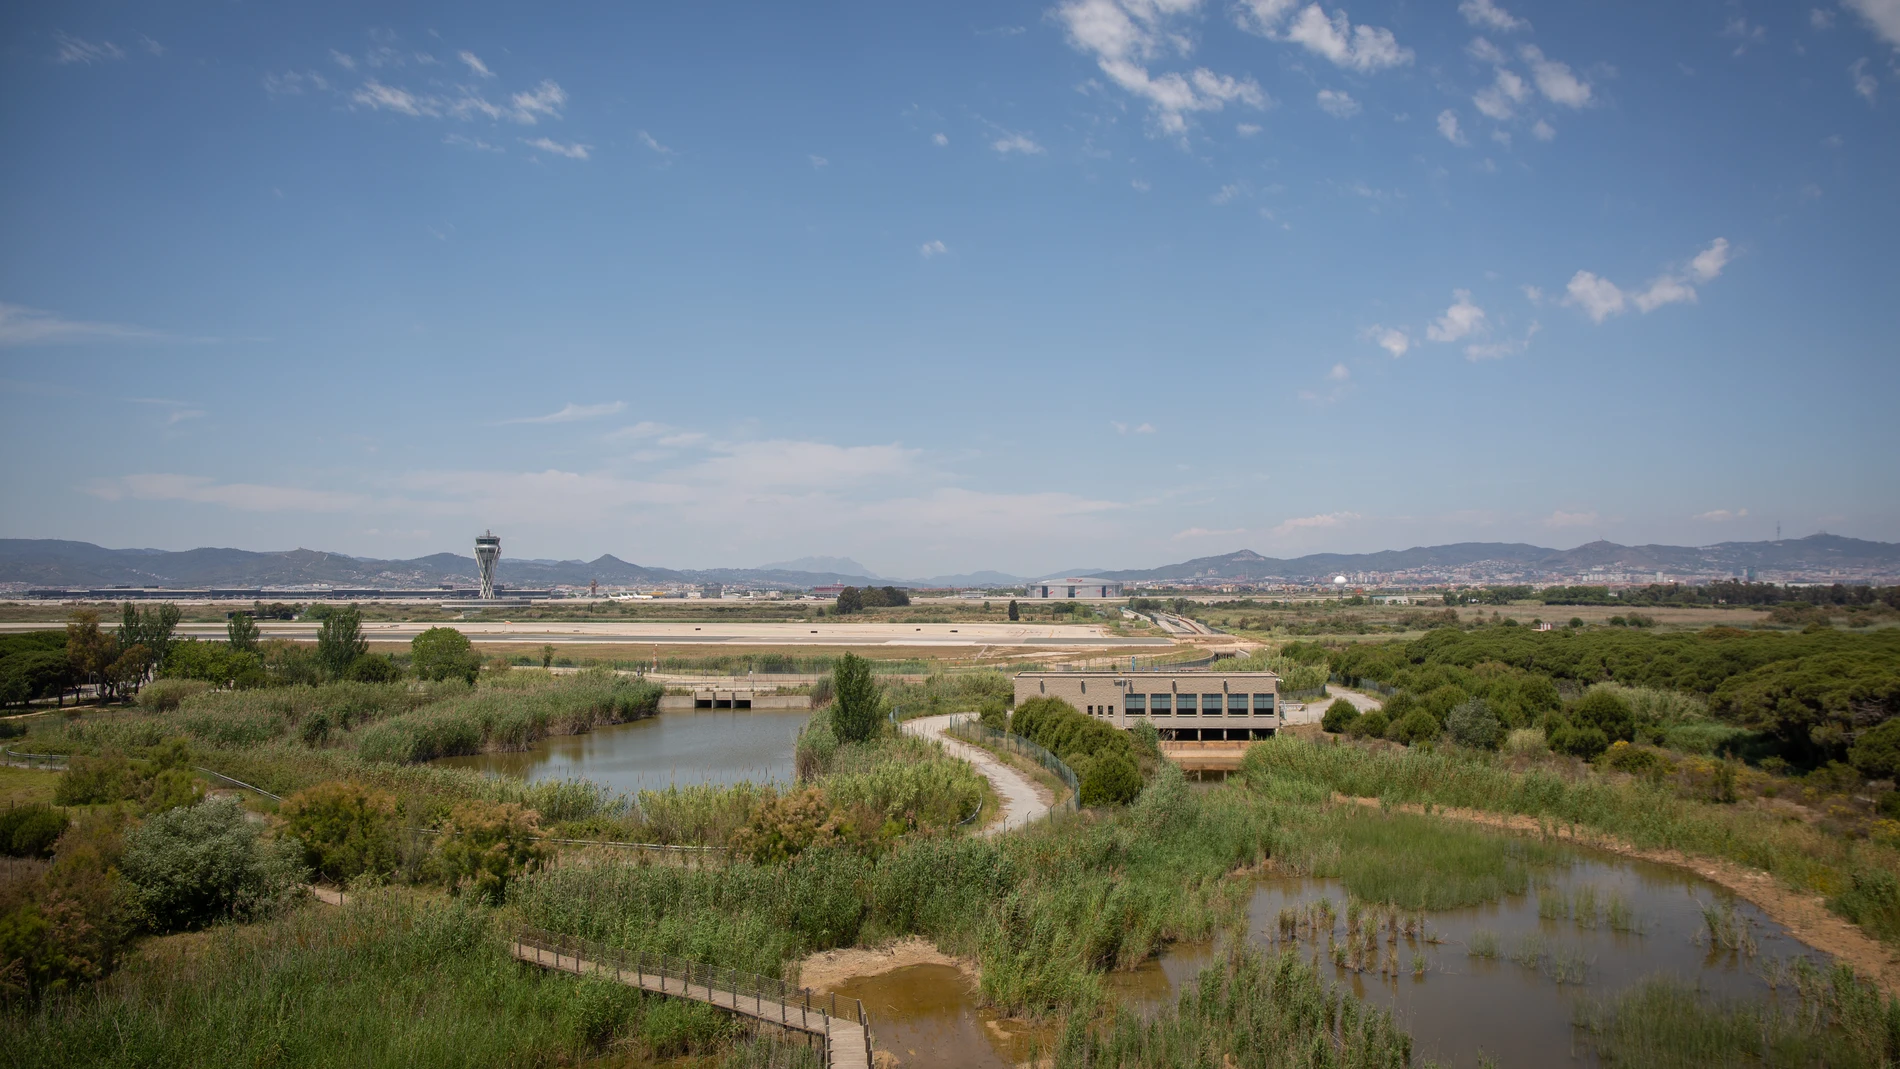 El aeropuerto de de Josep Tarradellas Barcelona-El Prat, cerca del espacio protegido natural de La Ricarda